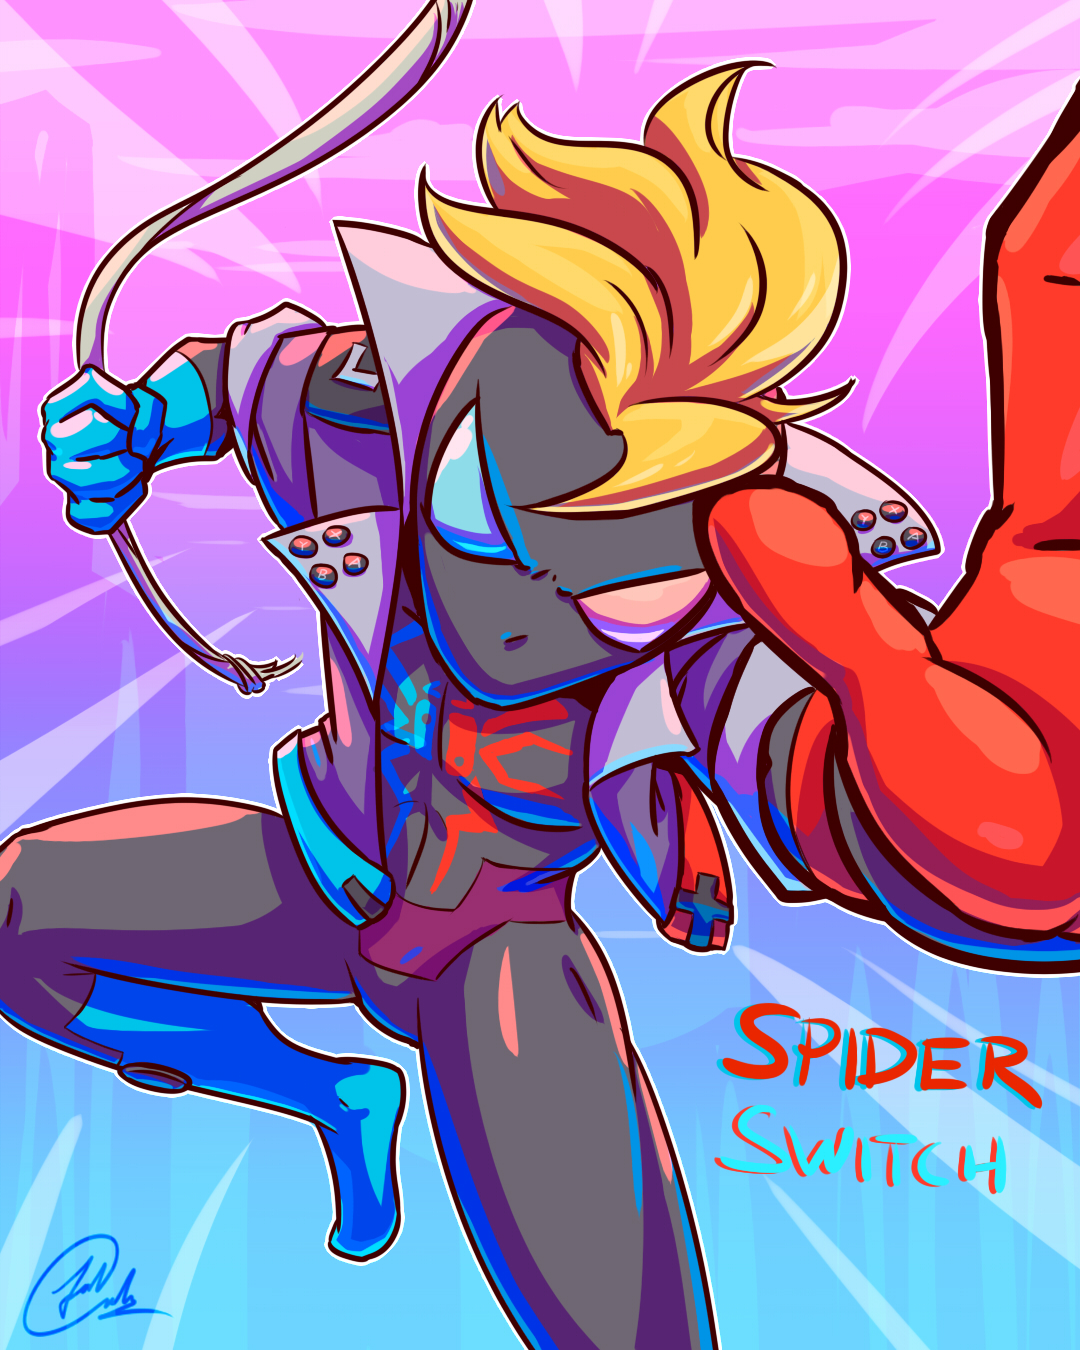 SPIDERSONA ART CHALLENGE! SpiderSano 